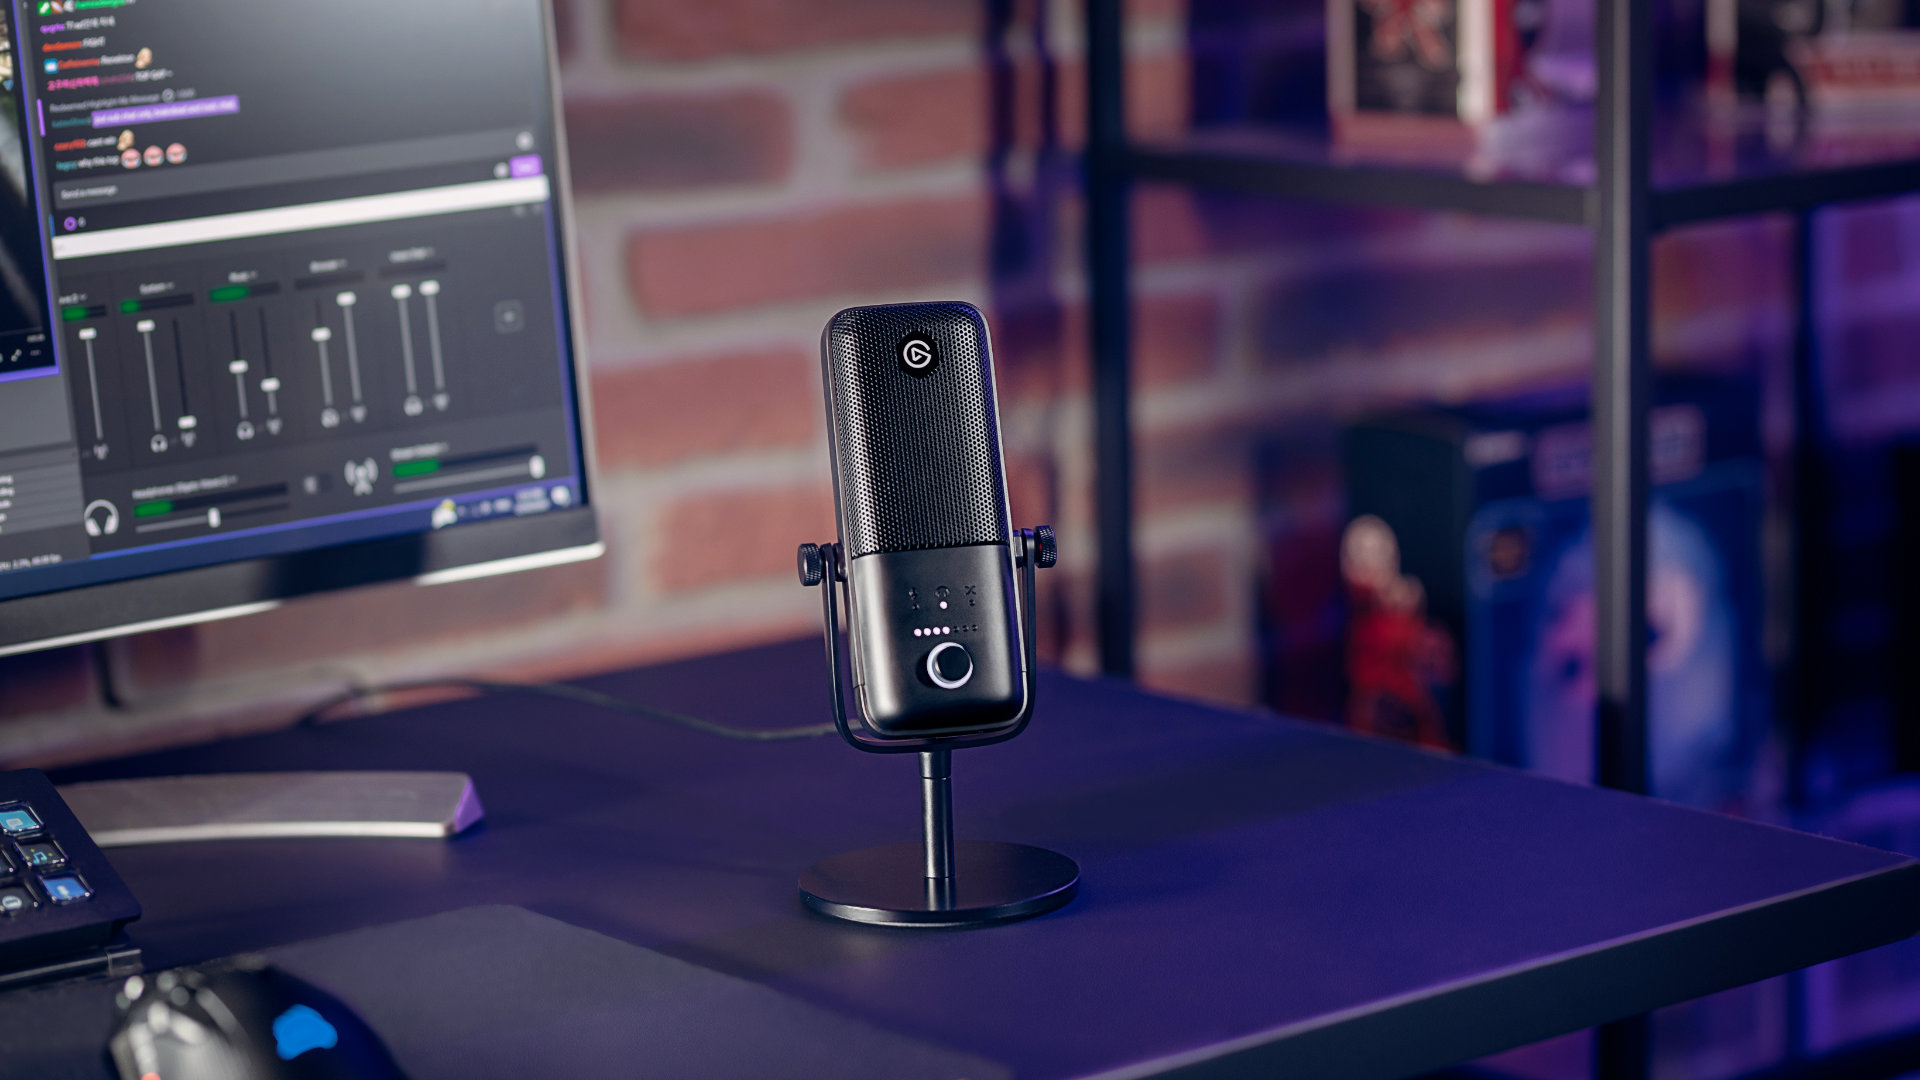 Elgato unveils “world's first” 4K60 Twitch streamer webcam